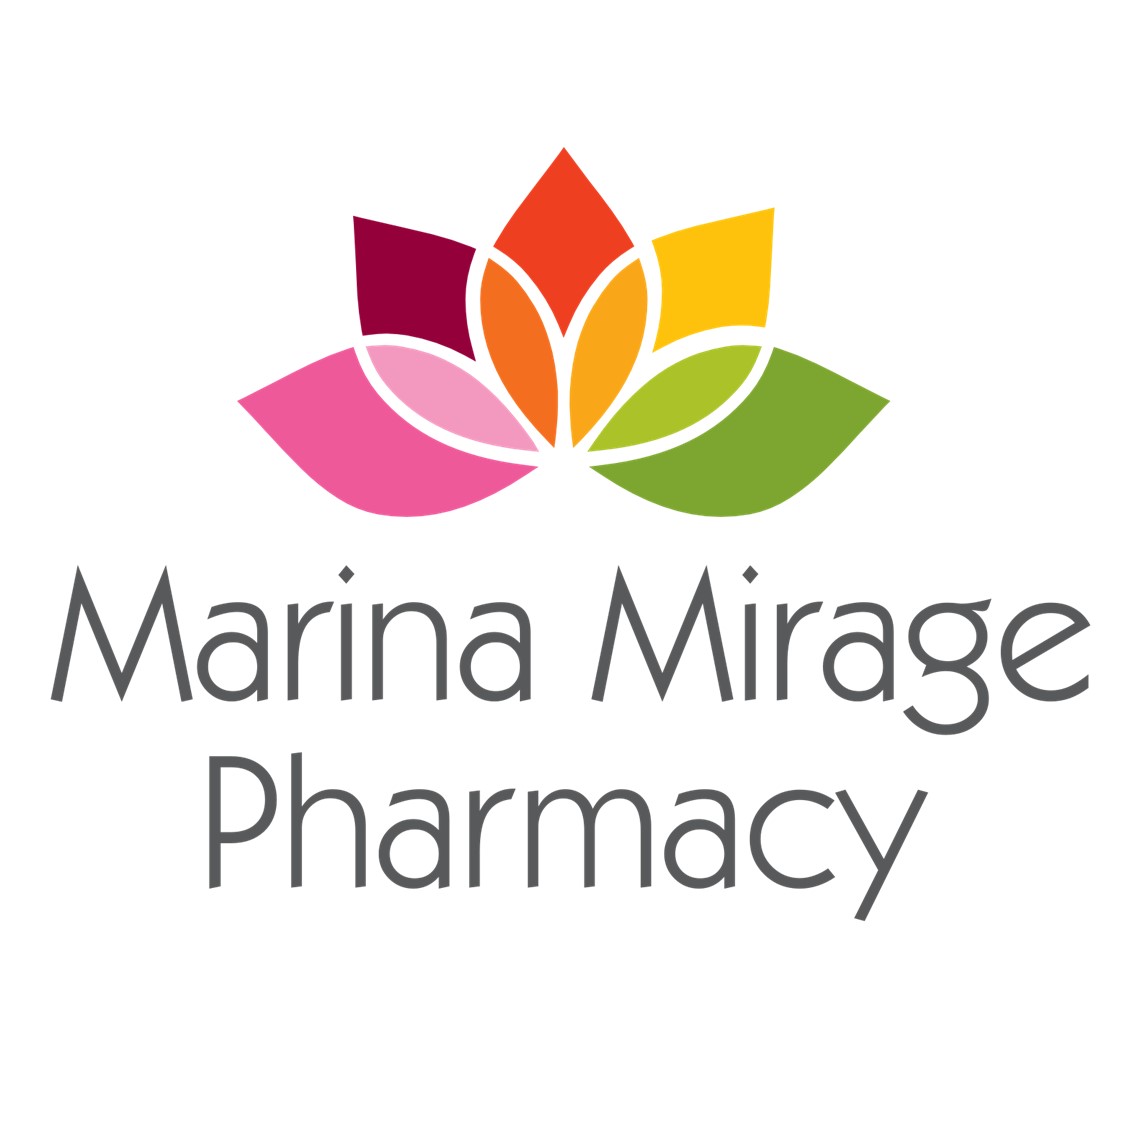 Marina Mirage Pharmacy Logo stacked